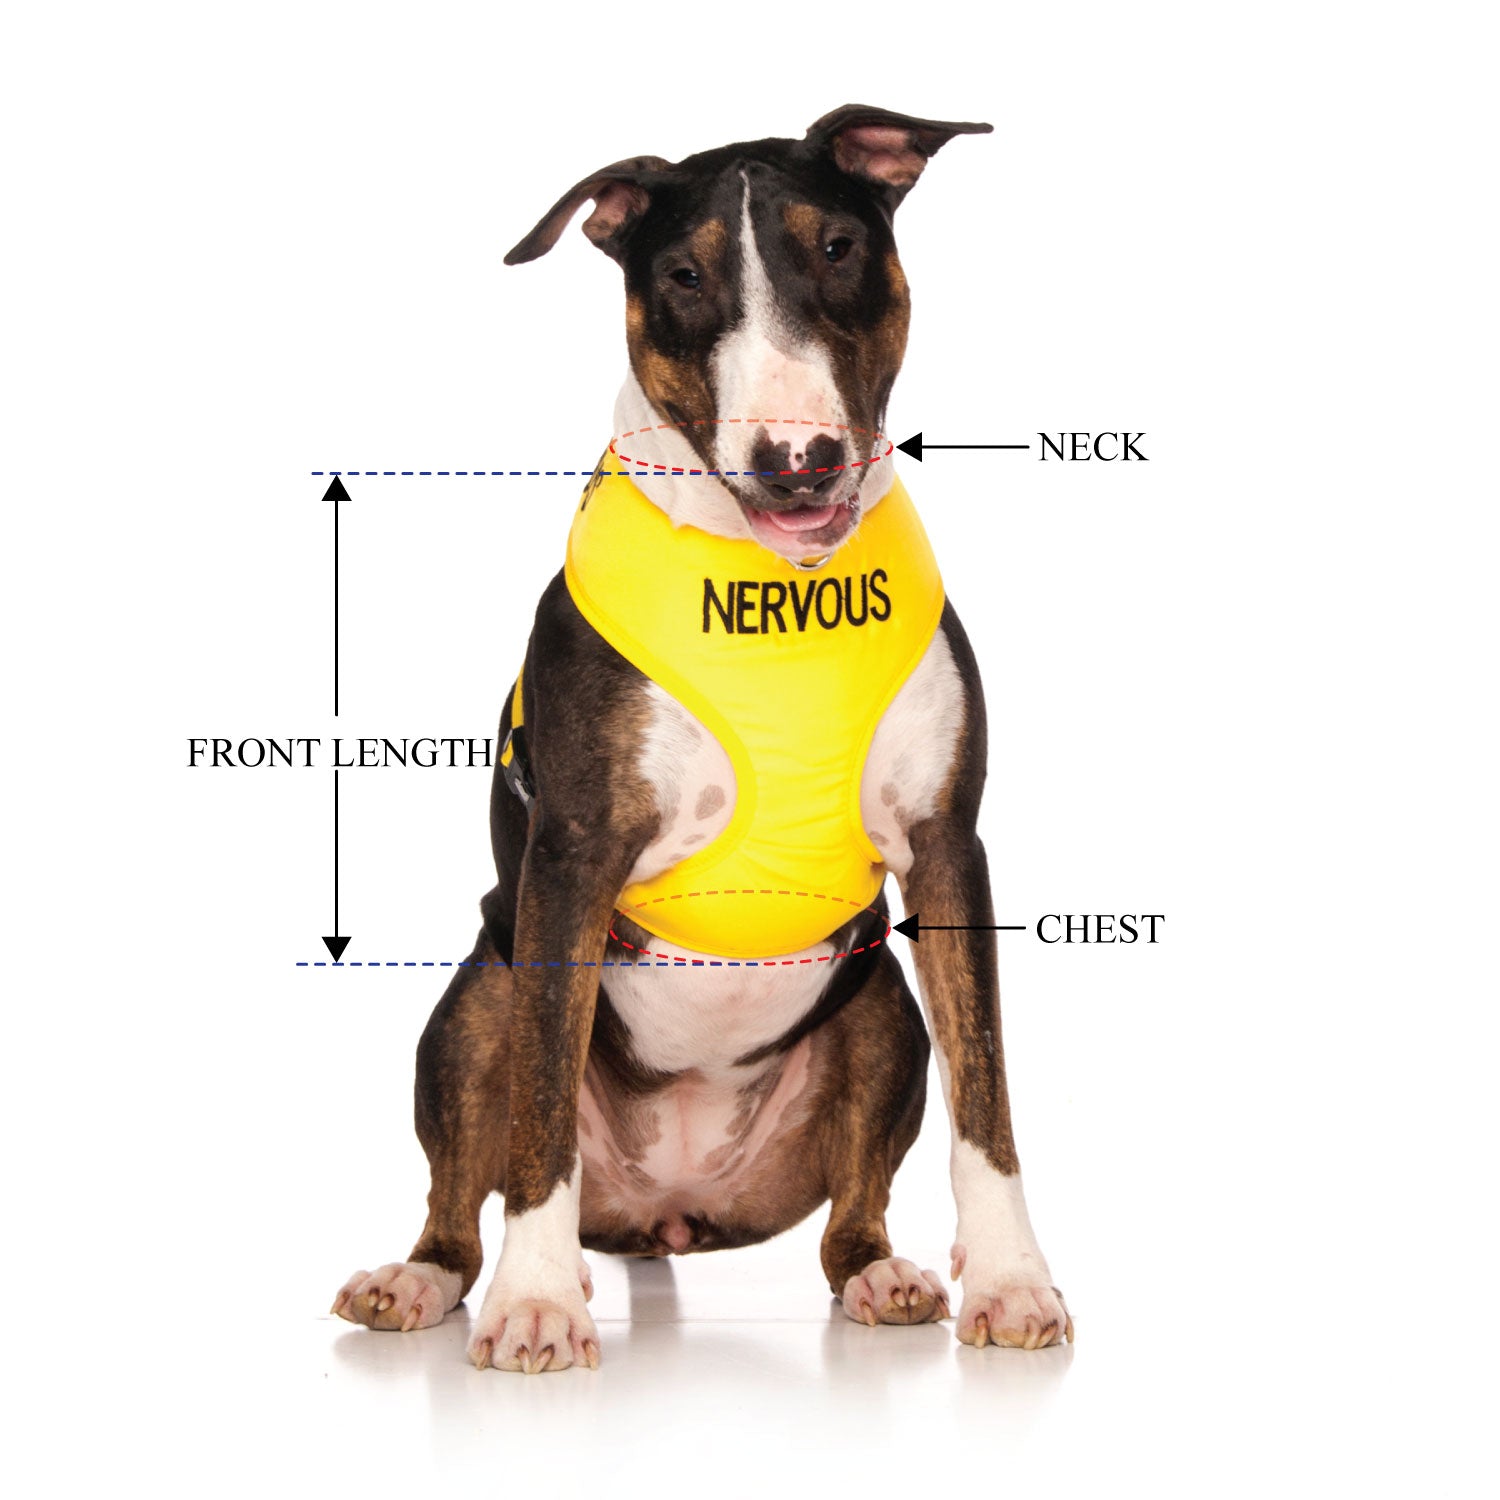 NERVOUS - Large adjustable Vest Harness